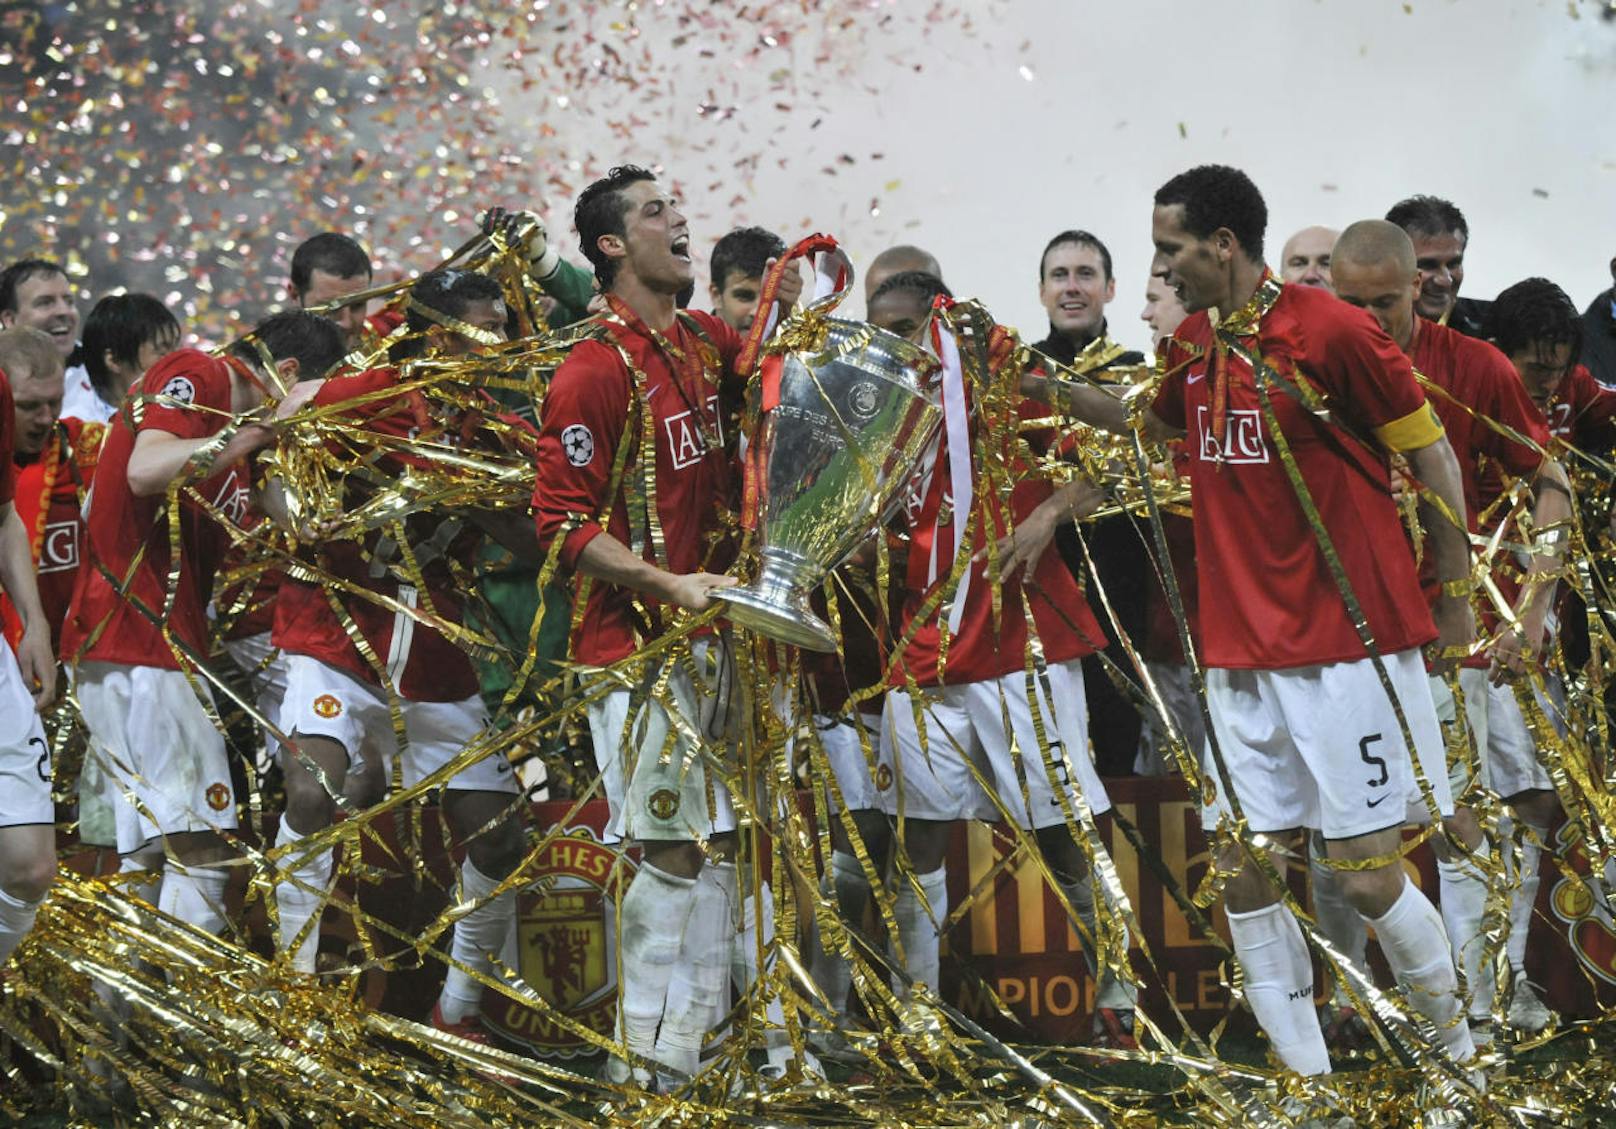 2008 konnte Ronaldo das erste Mal die Champions League gewinnen. Es war zugleich das einzige Mal, dass "CR7" mit United in der Königsklasse triumphierte.